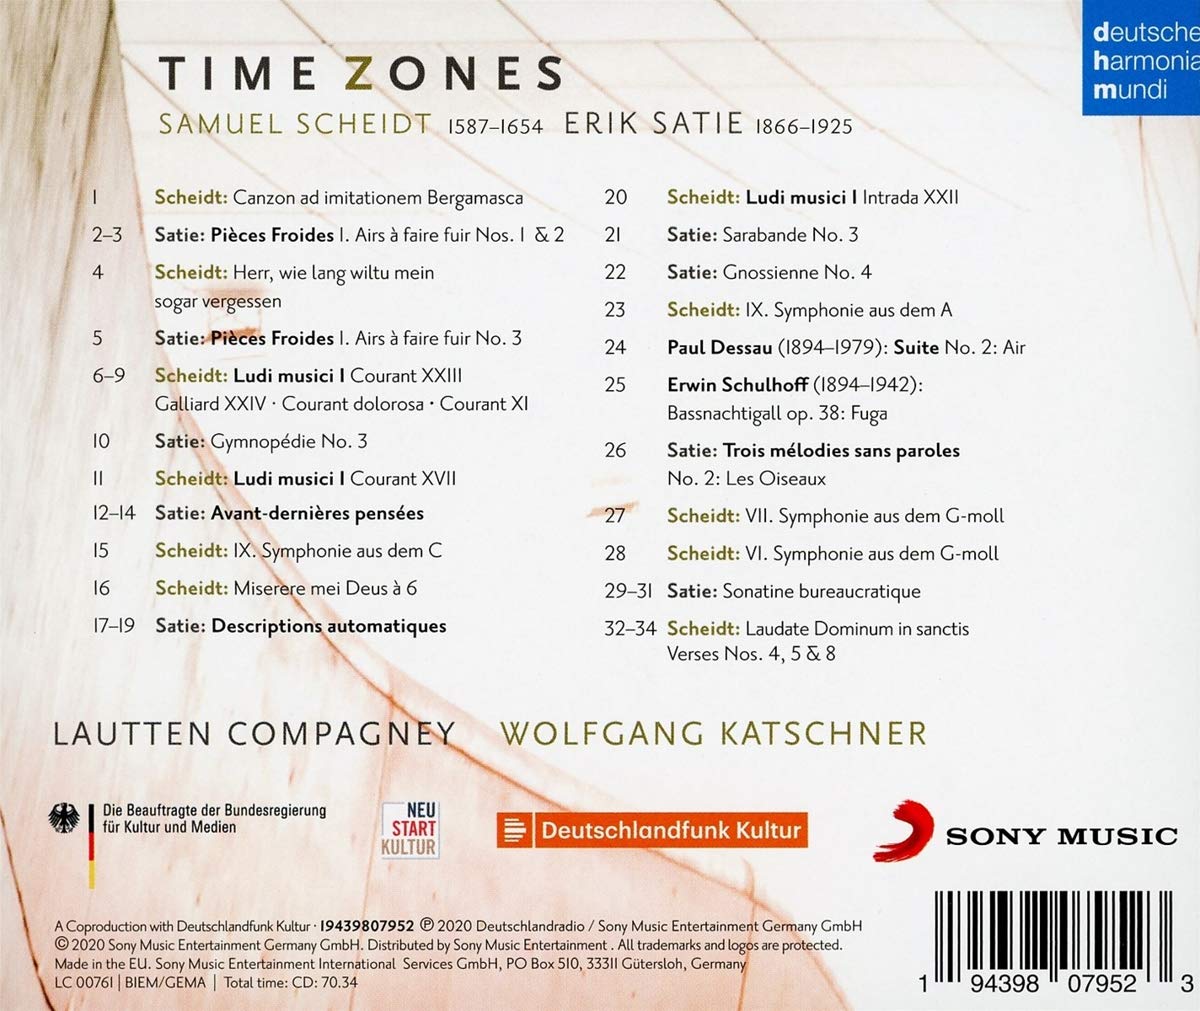 Lautten Compagney 사티 / 샤이트: 타임 존 (Erik Satie / Samuel Scheidt: Time Zone) 